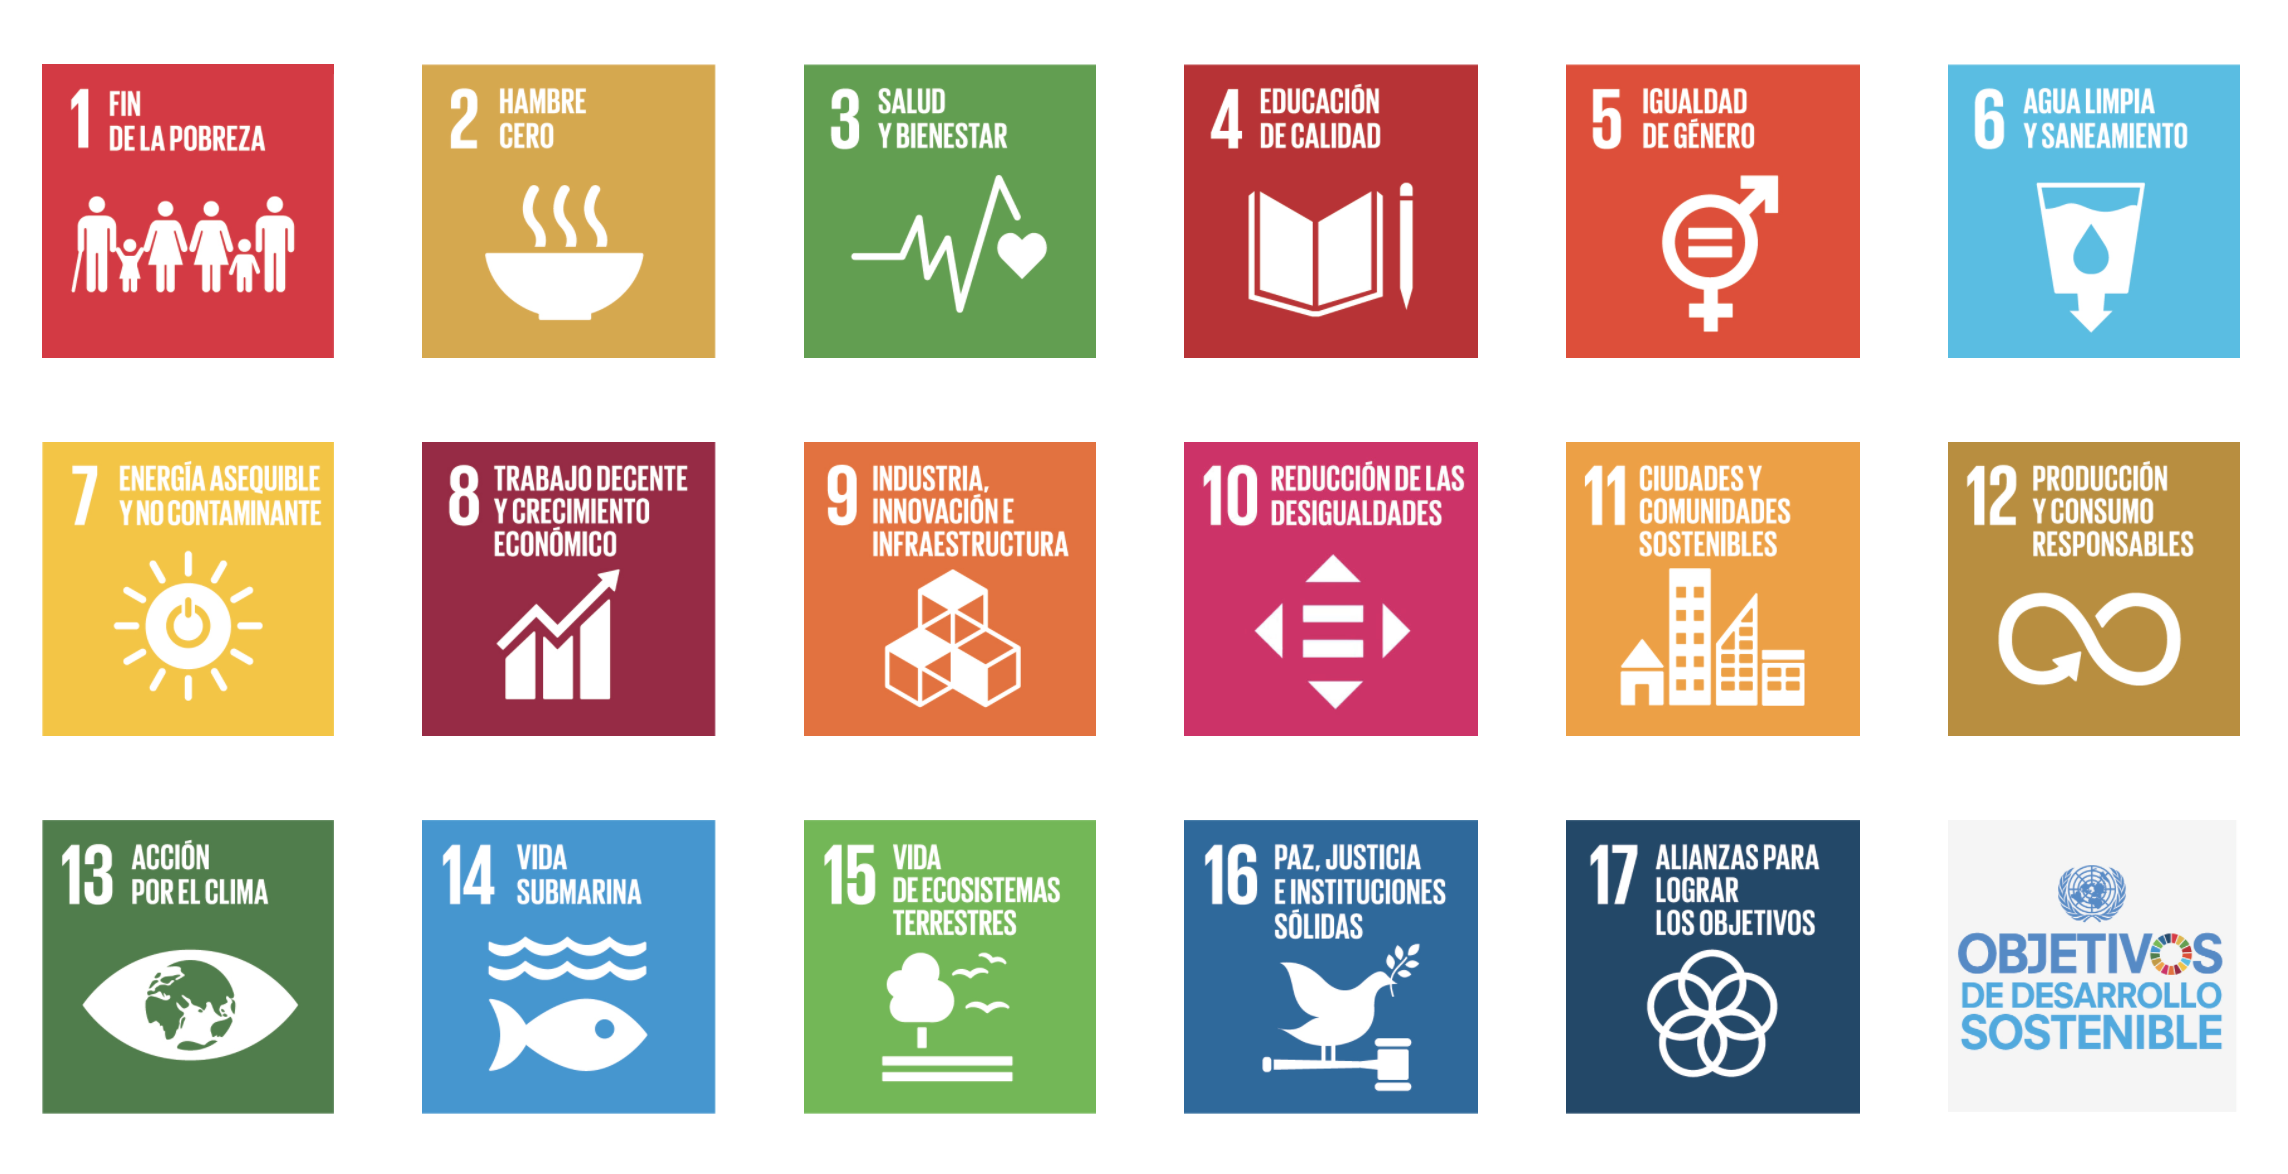 Objetivos de Desarrollo sostenible: 17 objetivos para transformar nuestro mundo / Organización de las Naciones Unidas.